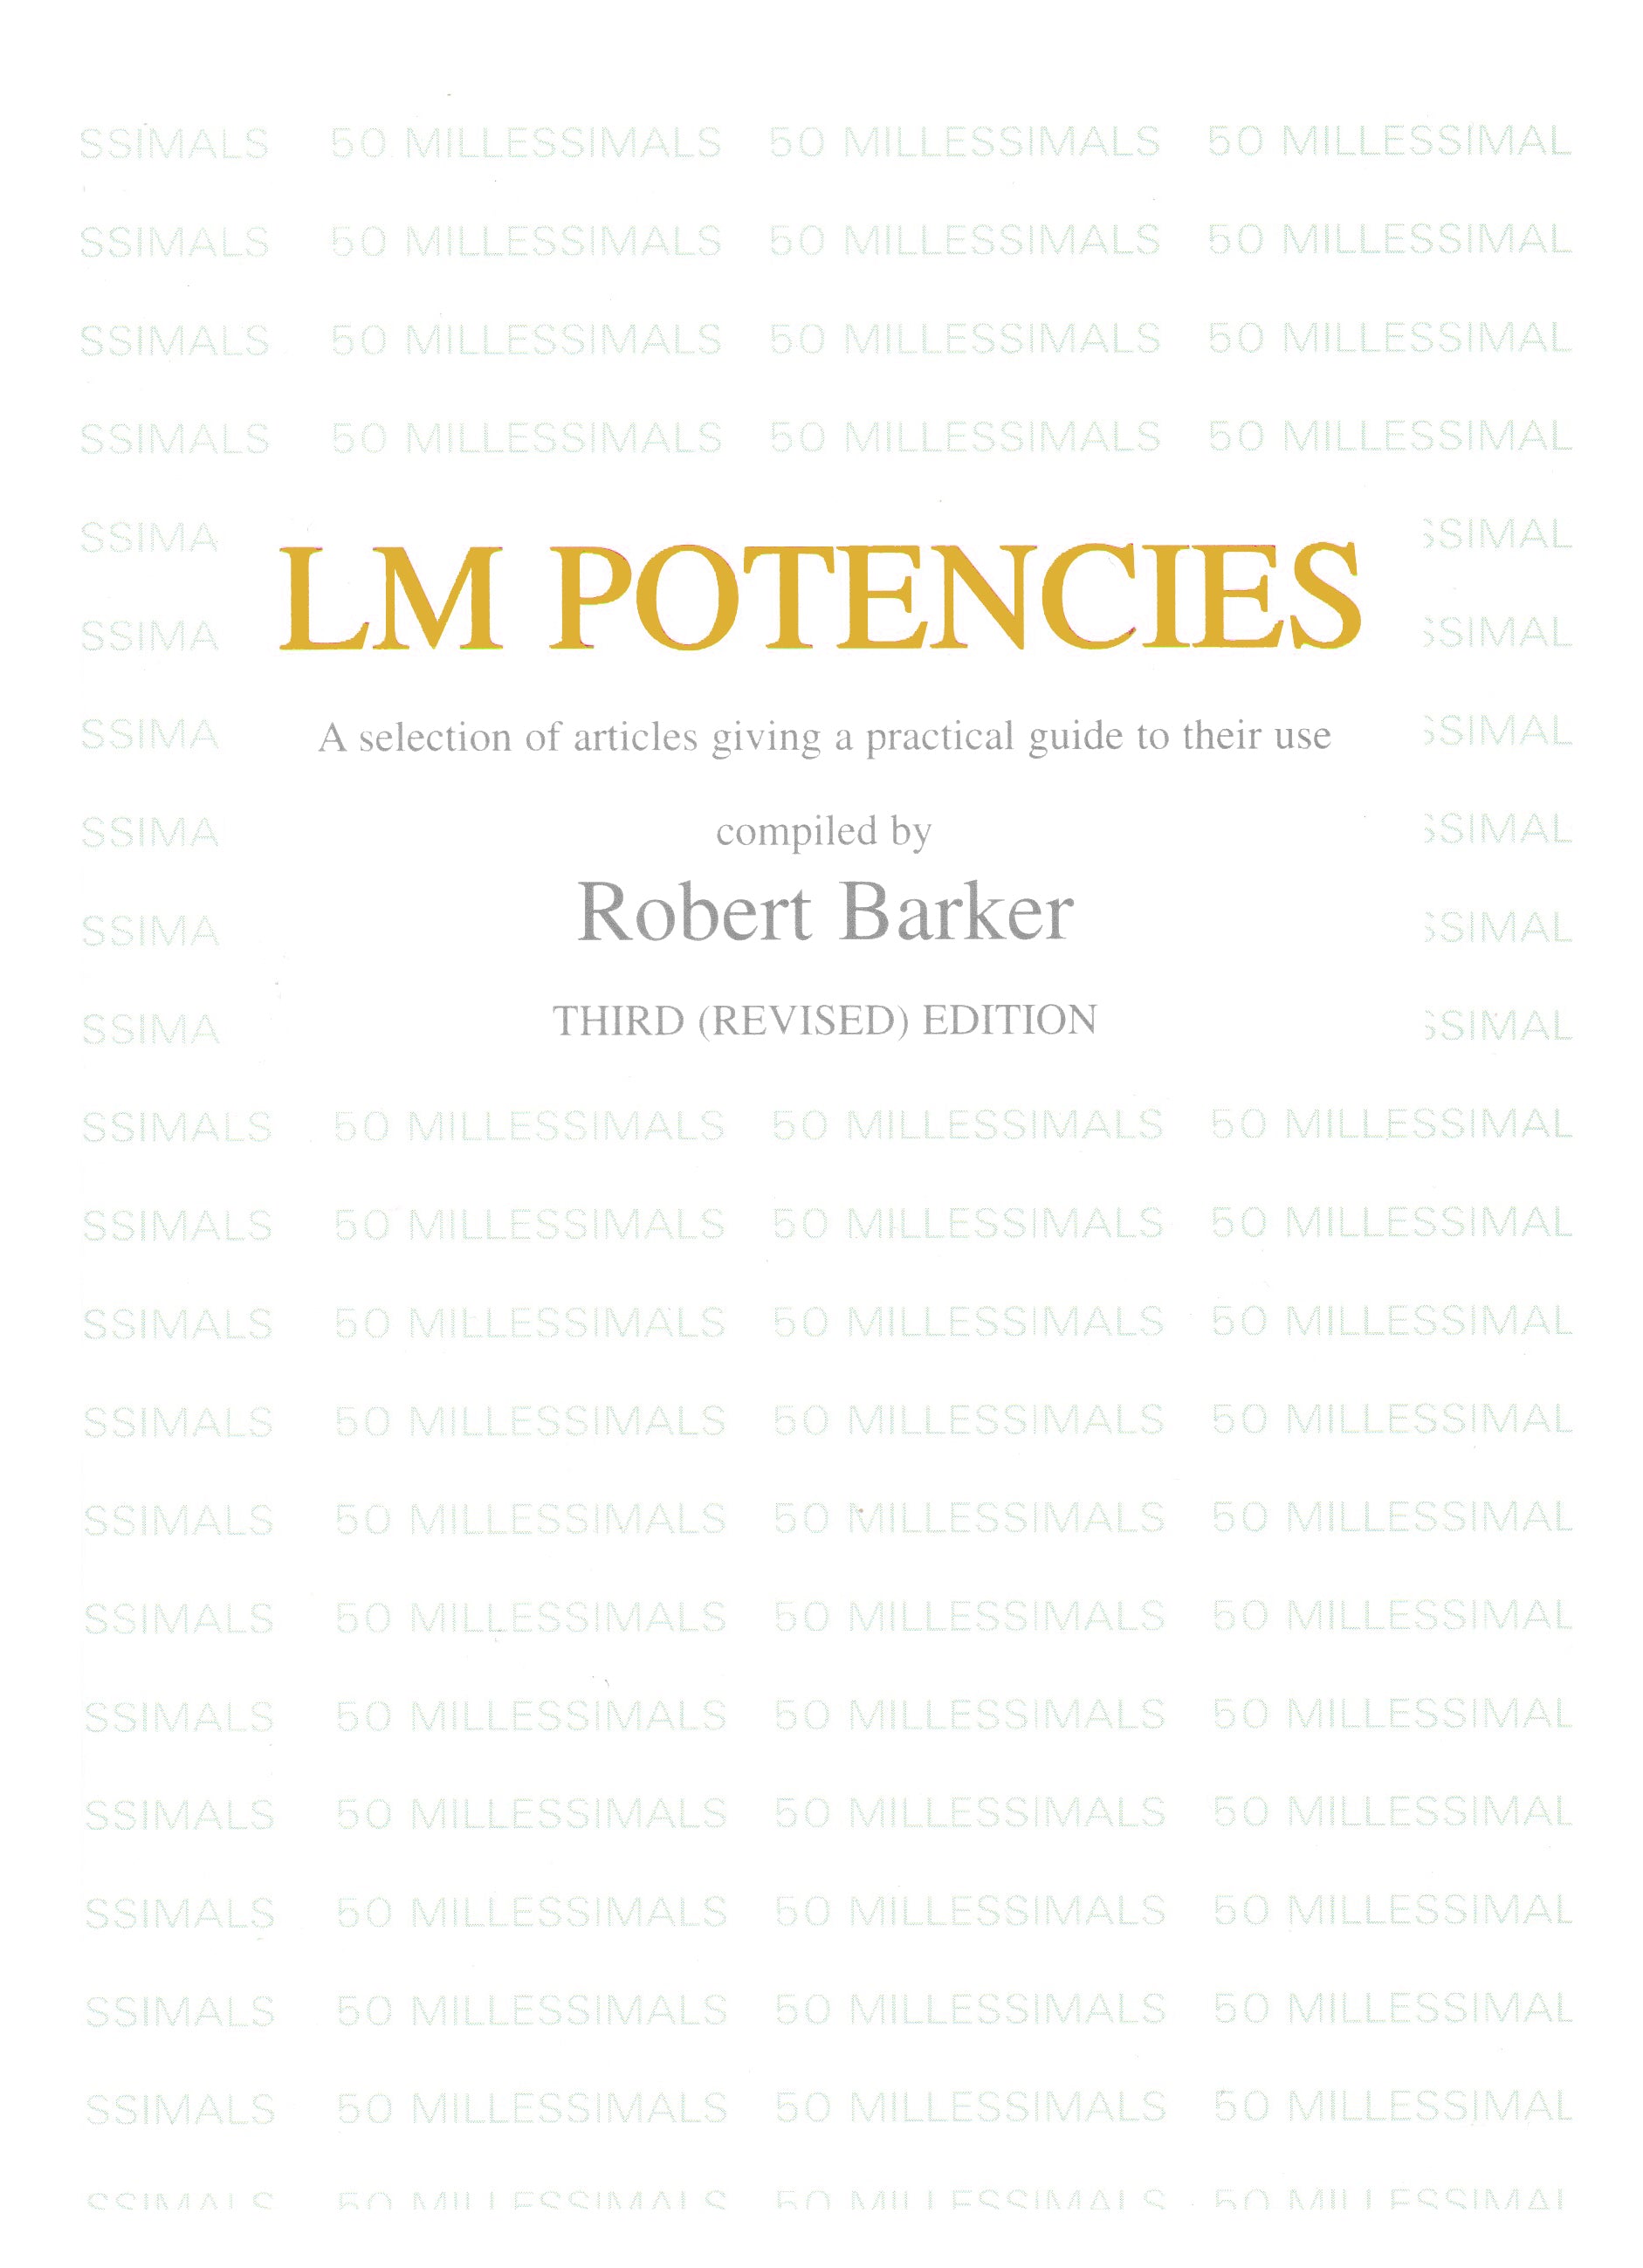 LM Potencies - Robert Barker